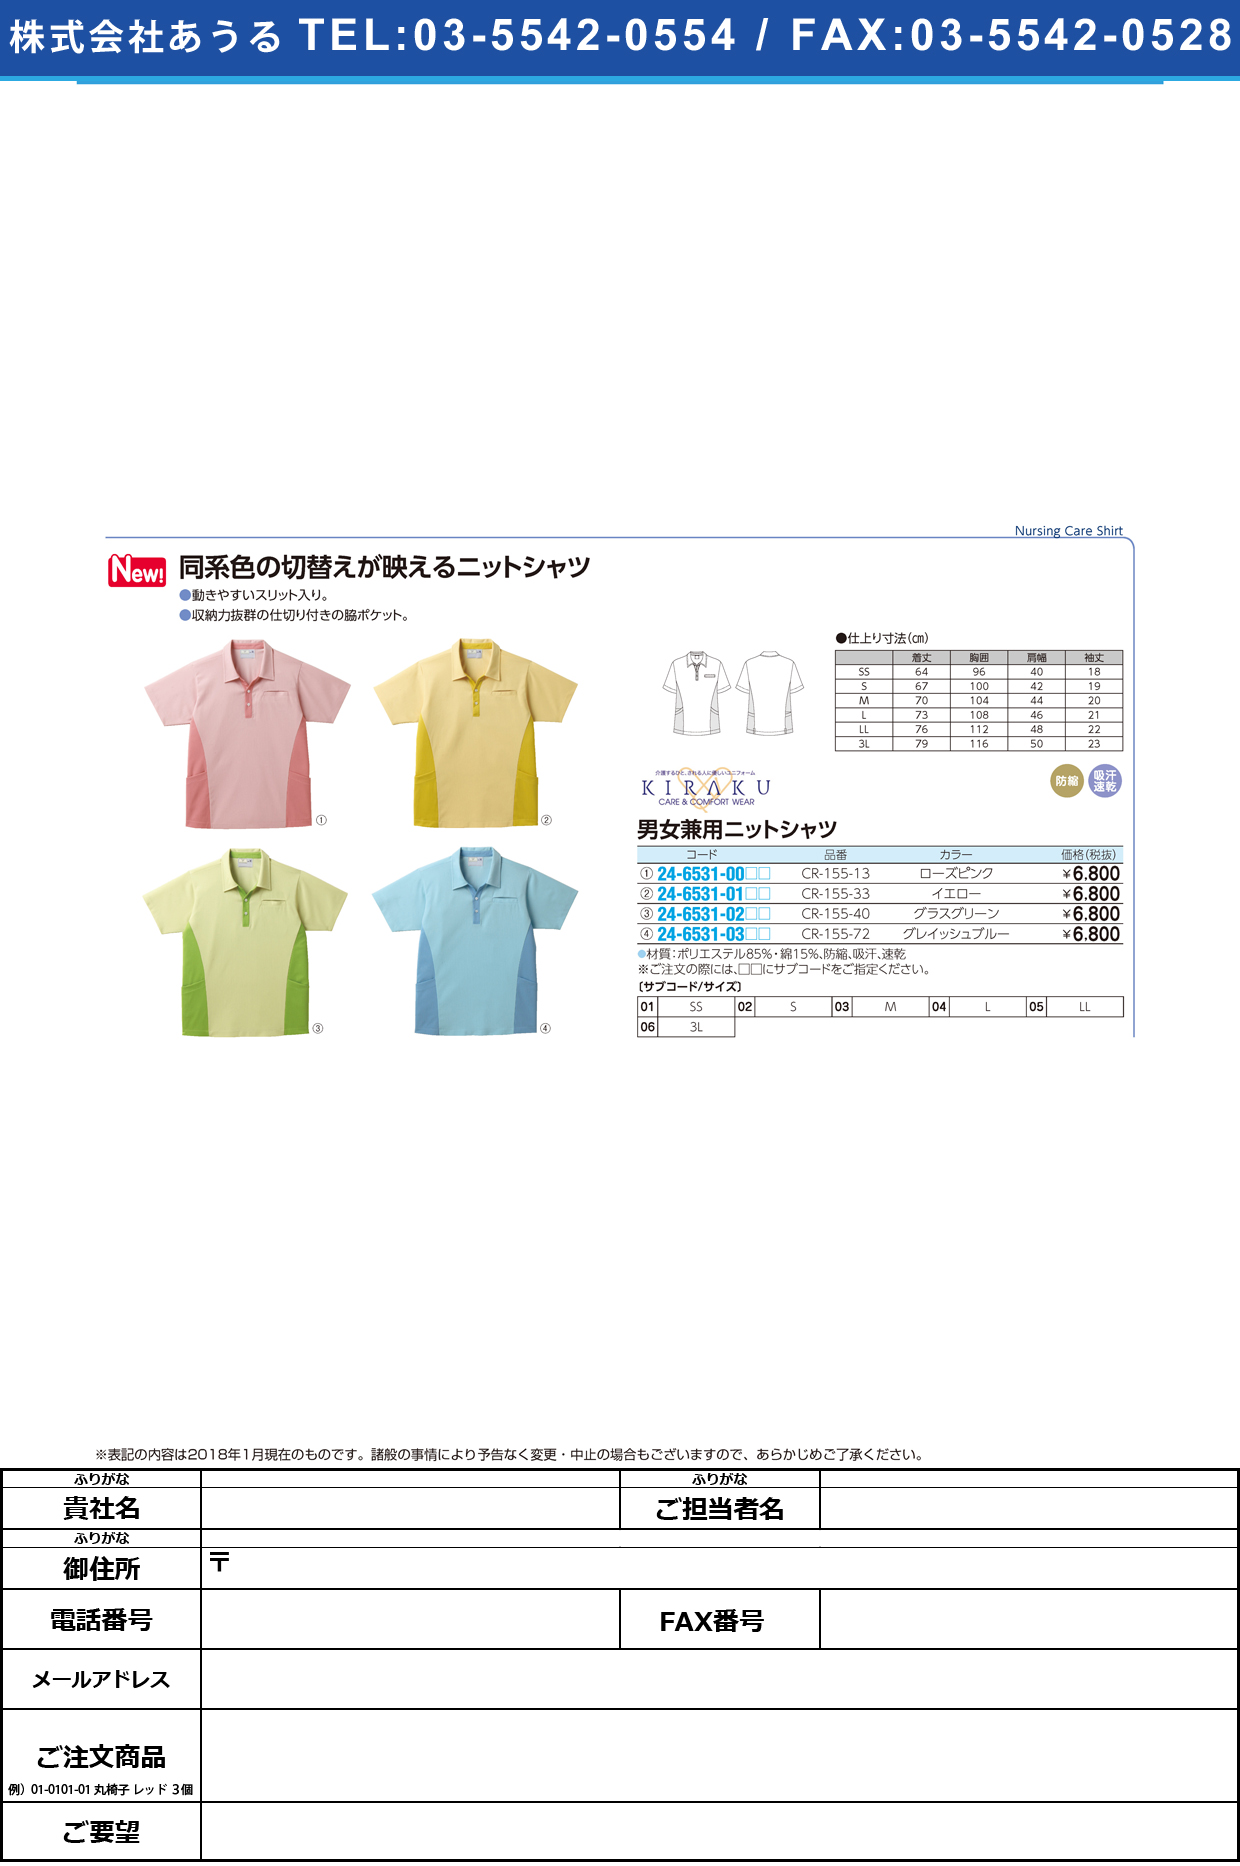 (24-6531-02)キラクニットシャツ（男女兼用） CR155-40(ｸﾞﾗｽｸﾞﾘｰﾝ) ｷﾗｸﾆｯﾄｼｬﾂ(ﾀﾞﾝｼﾞｮｹﾝﾖｳ ＬＬ(トンボ)【1枚単位】【2018年カタログ商品】